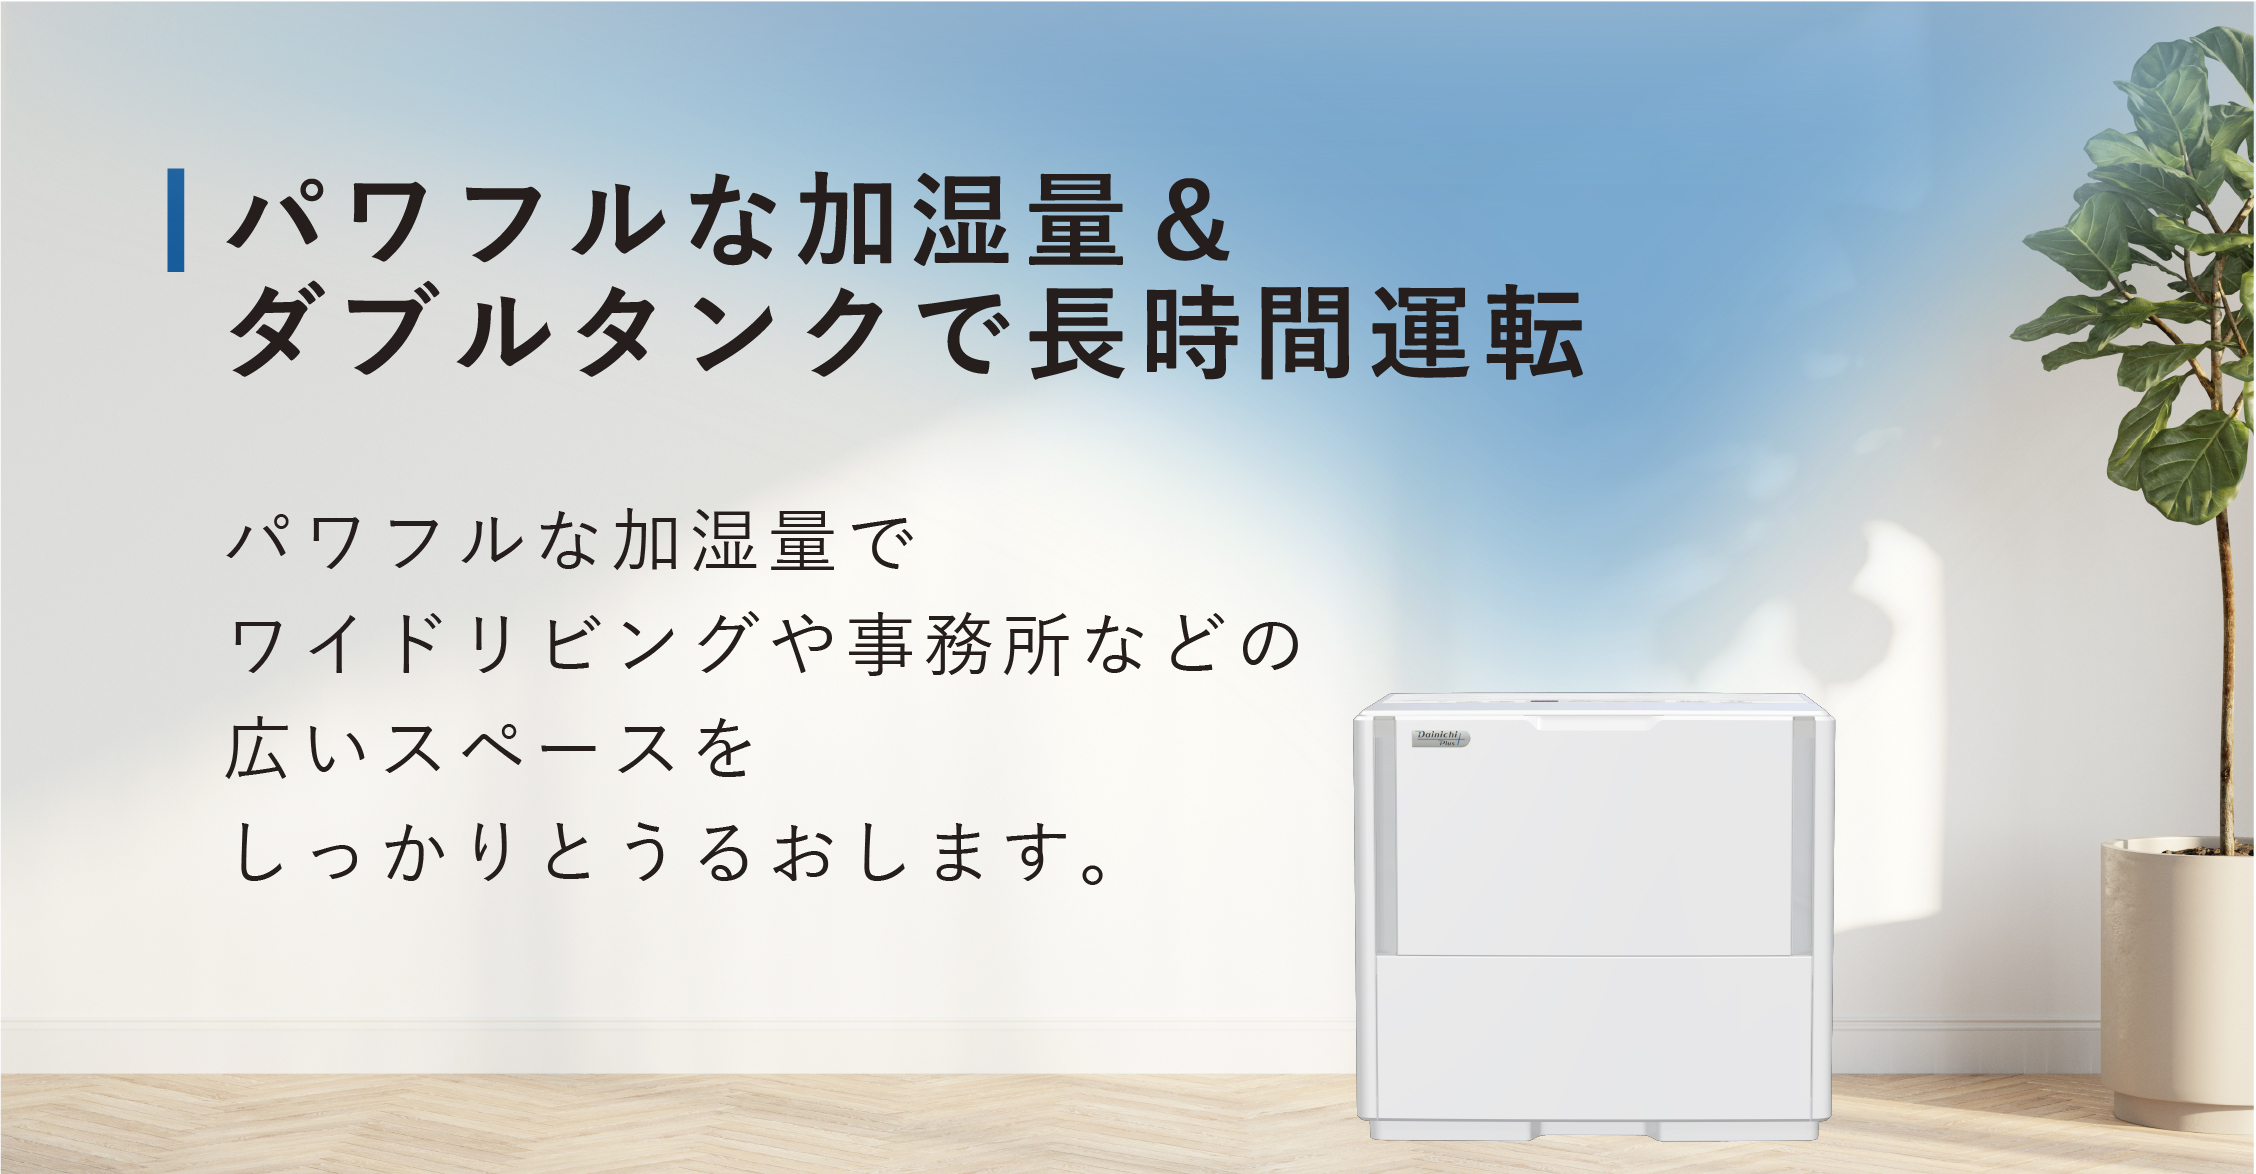 正規取扱店 総合 夢のAZ ダイニチ工業 ハイブリッド式加湿器 HDシリーズ パワフルモデル ホワイト HD-1800F-W 